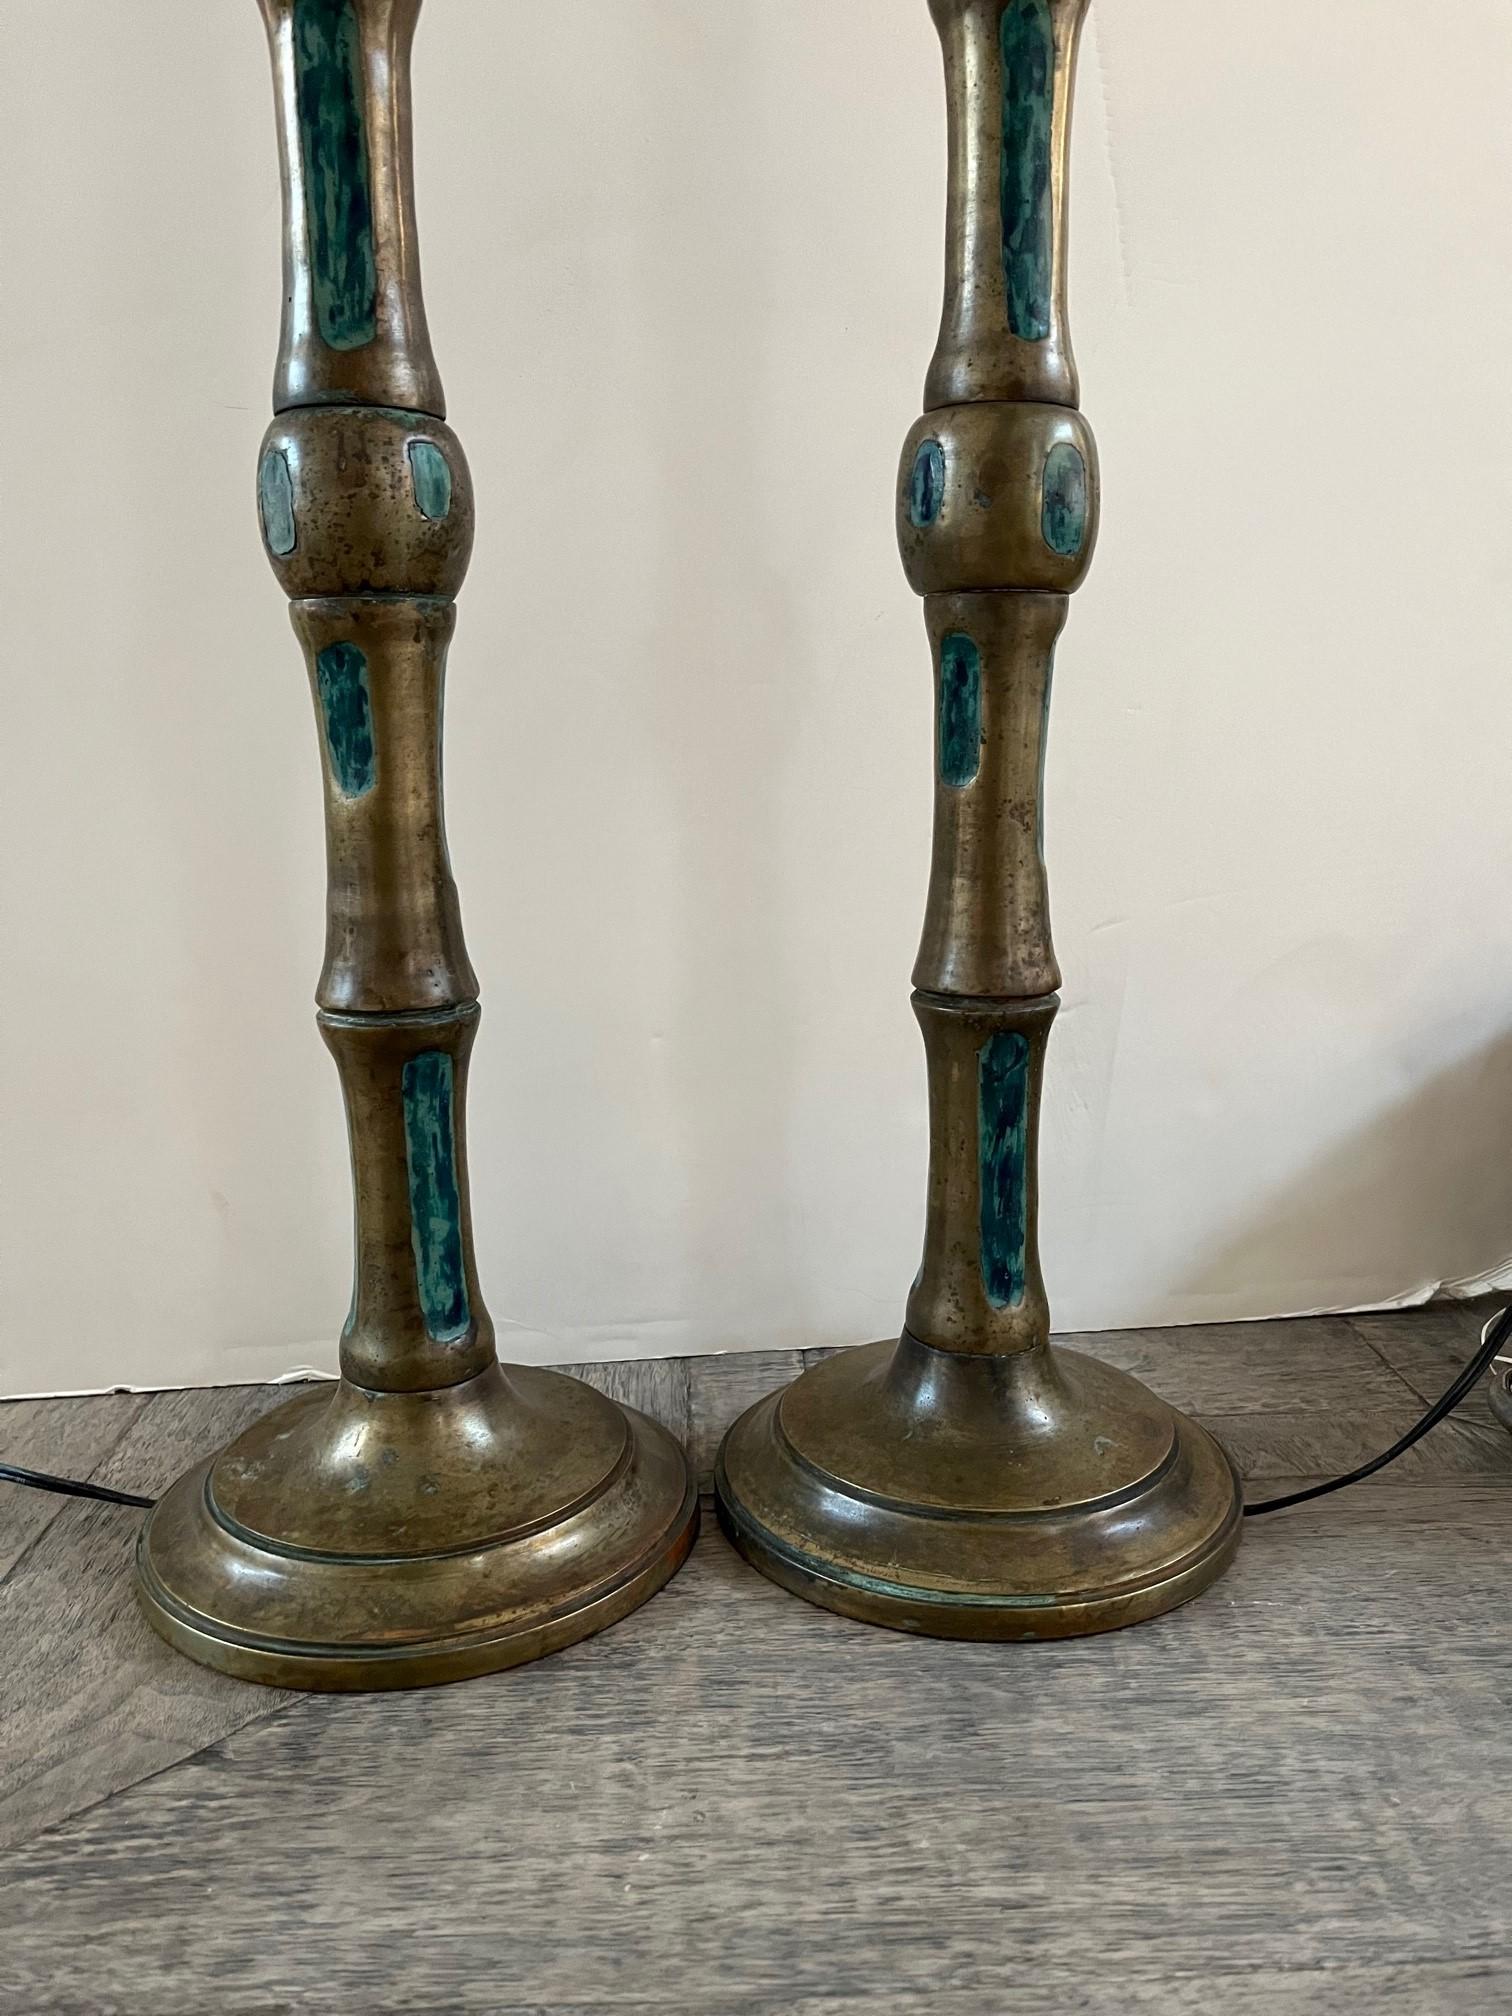 Paire de lampes de table vintage en bronze conçues par Pepe Mendoza, avec un motif de fausse tige de bambou en bronze, incrusté de céramique turquoise émaillée. Comprend deux abat-jour en soie assortis,
Dans le style Mid-Century Modern, sur des